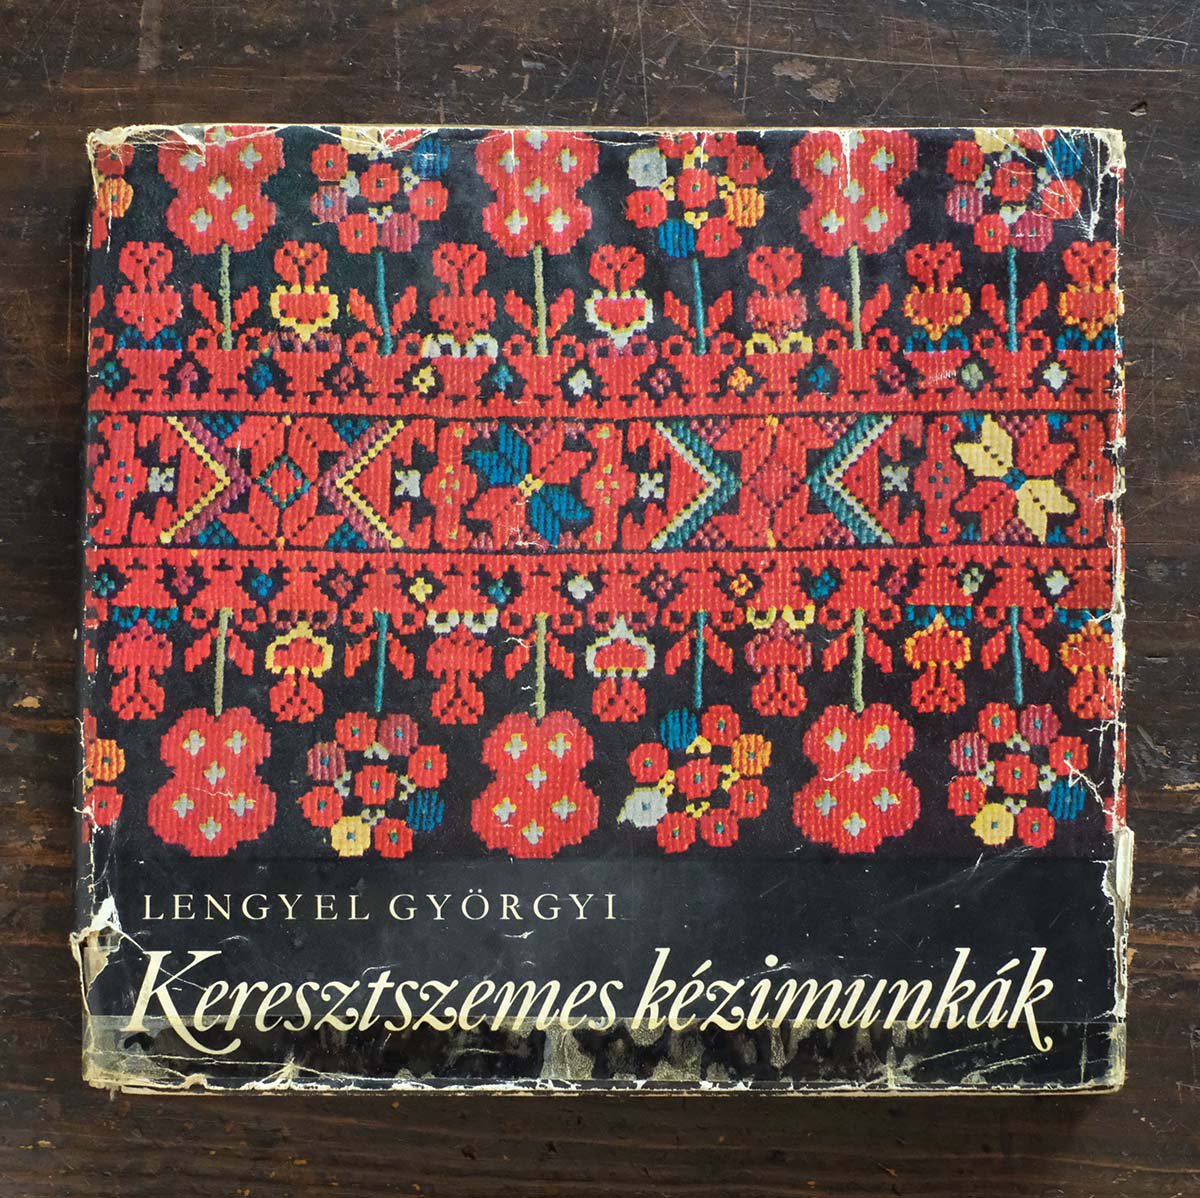 ハンガリーのクロスステッチ図案集『Keresztszemes kezimunkak』 - チャルカお買いものサイト／CHARKHA shopping  site